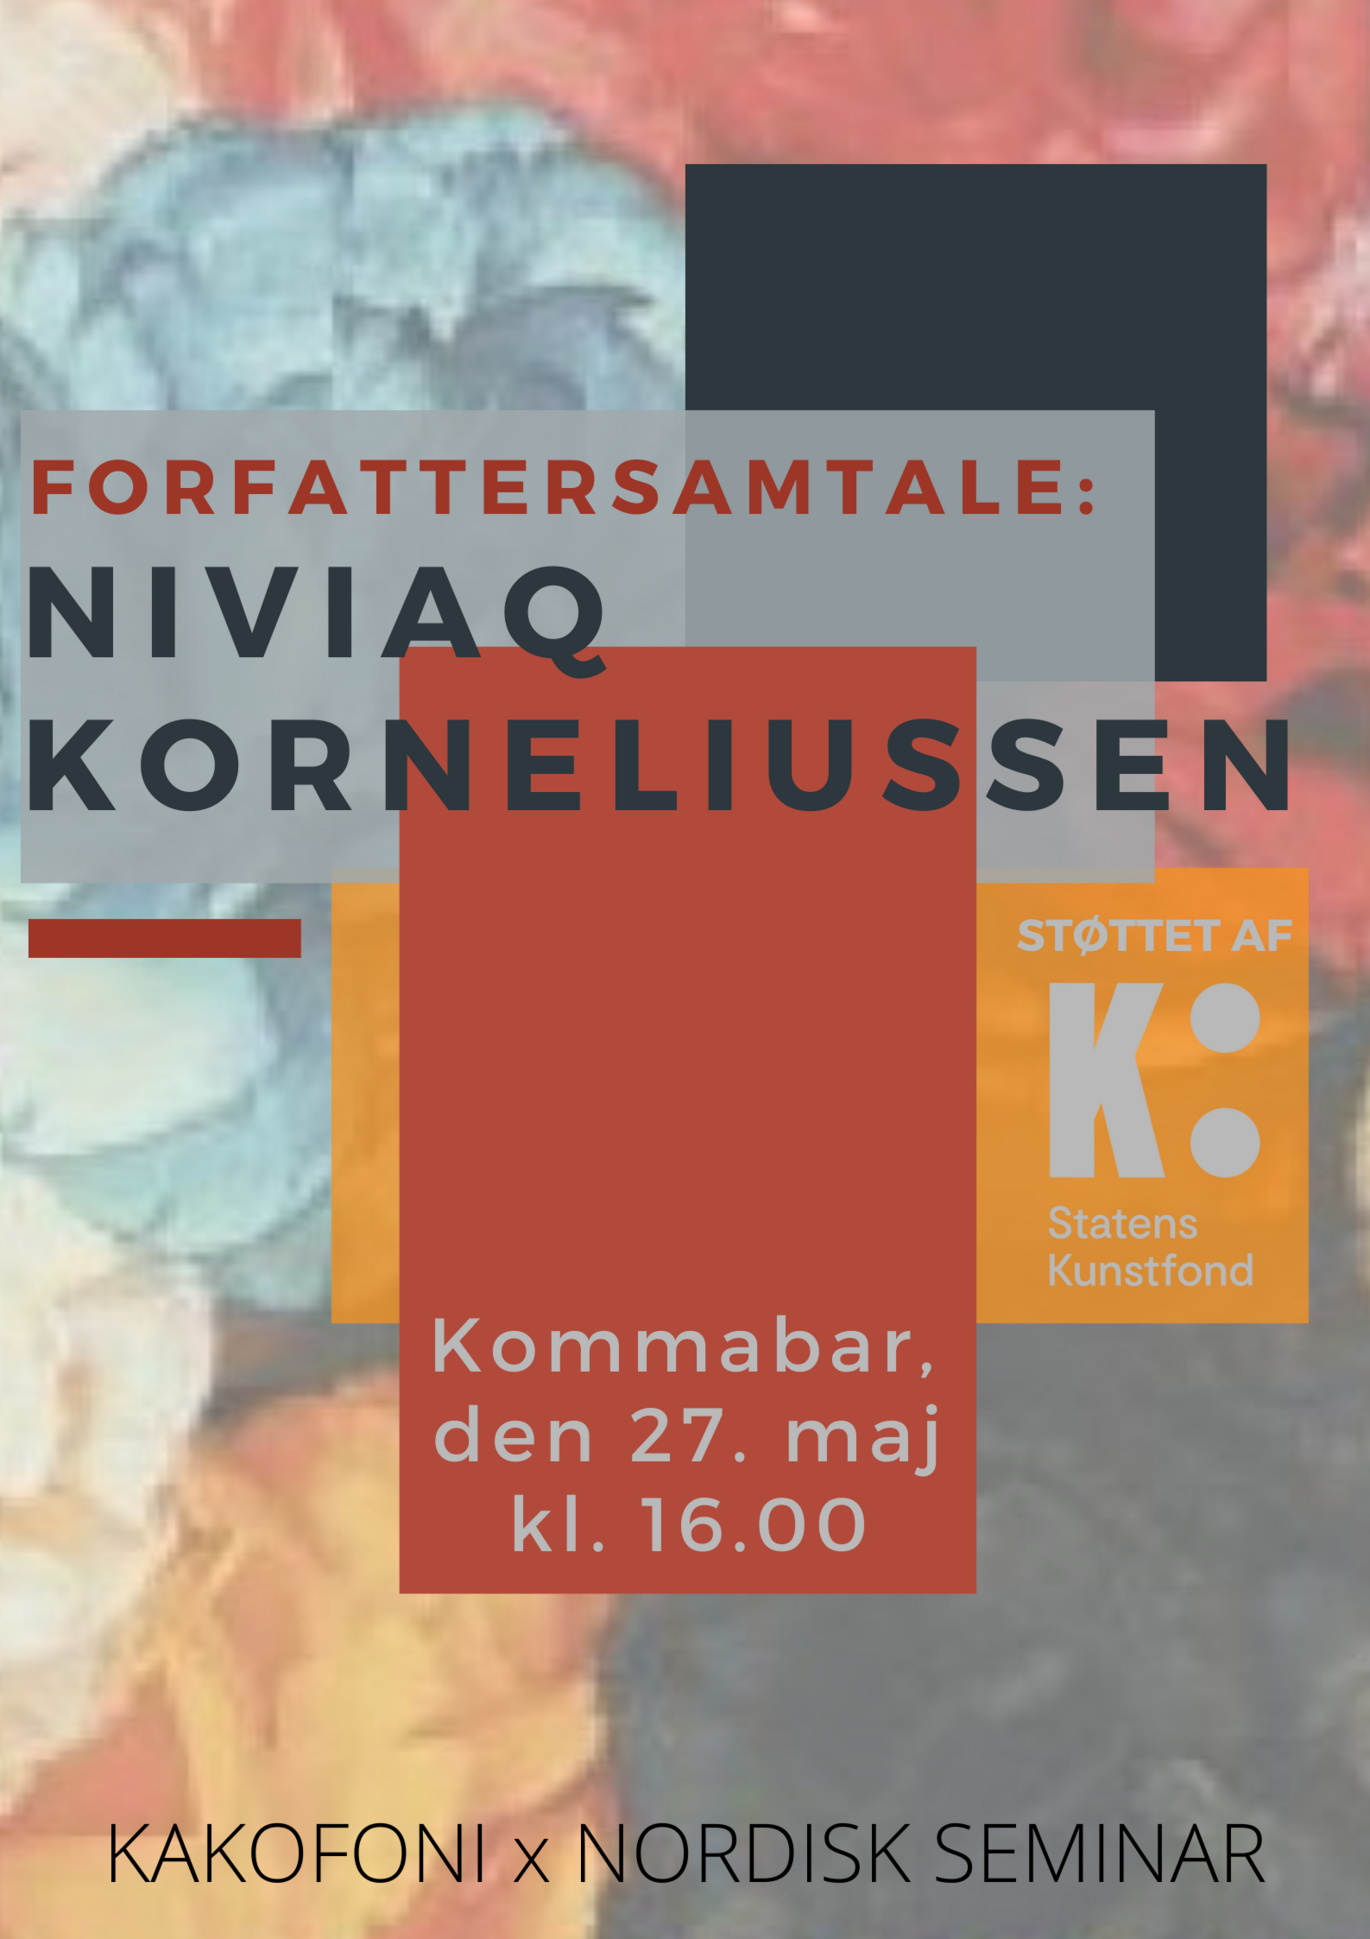 Nordisk Seminar og Kakofoni: Forfattersamtale med Niviaq Korneliussen. 27. maj, klokken 16 i KommaBar.